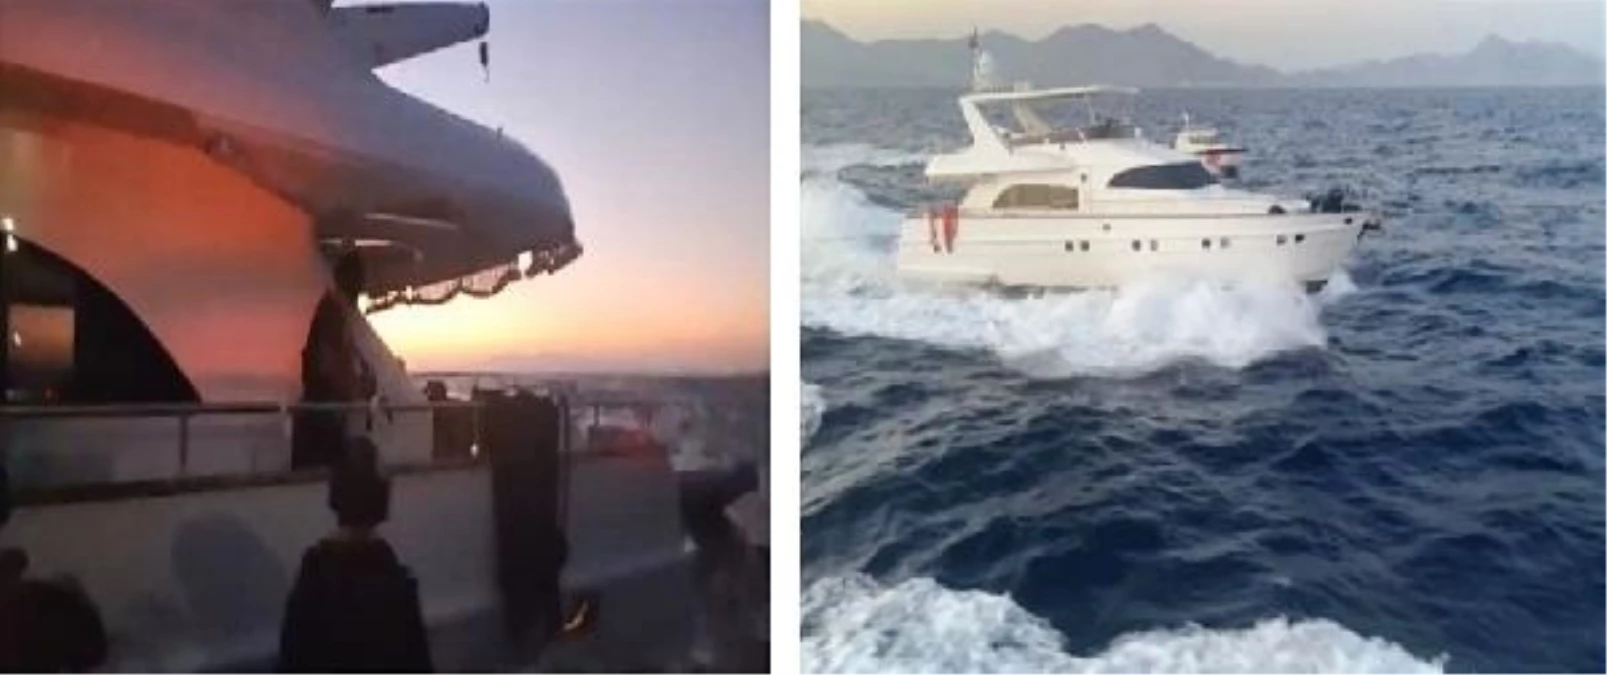 FETÖ/PDY Şüphelileri Yunan Adalarına Kaçmaya Çalışırken Yakalandı